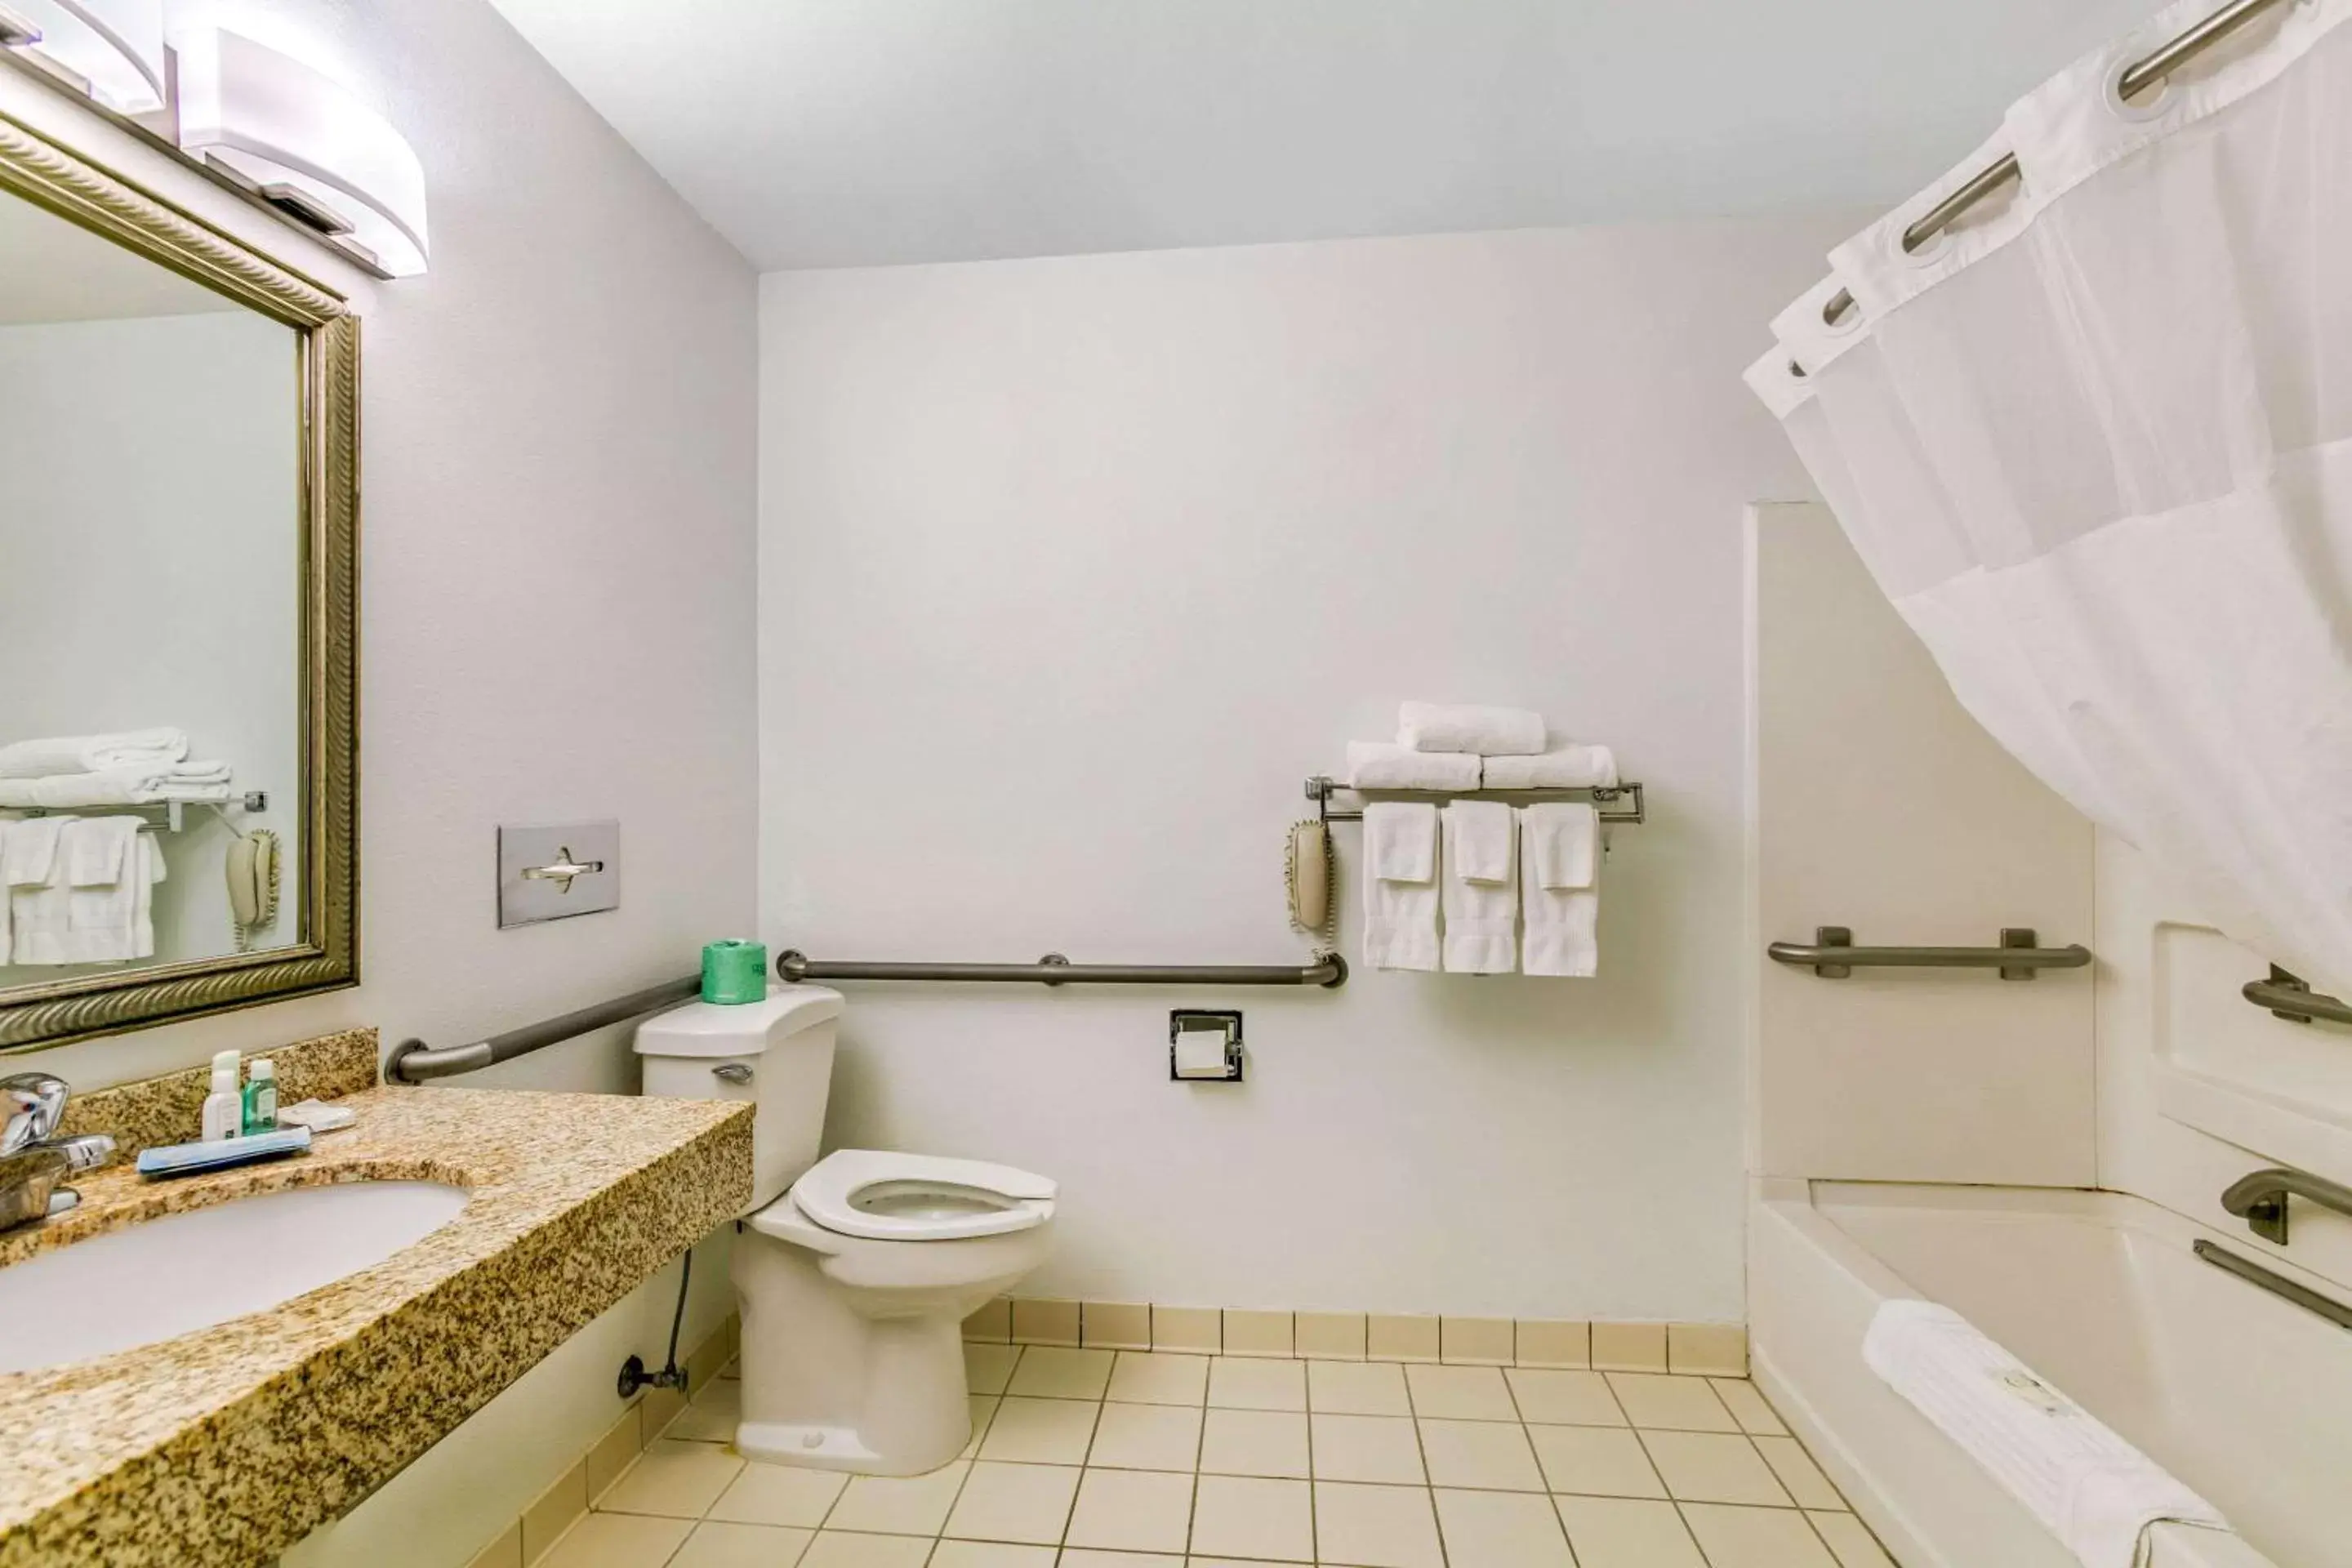 Bathroom in Quality Inn near Monument Health Rapid City Hospital